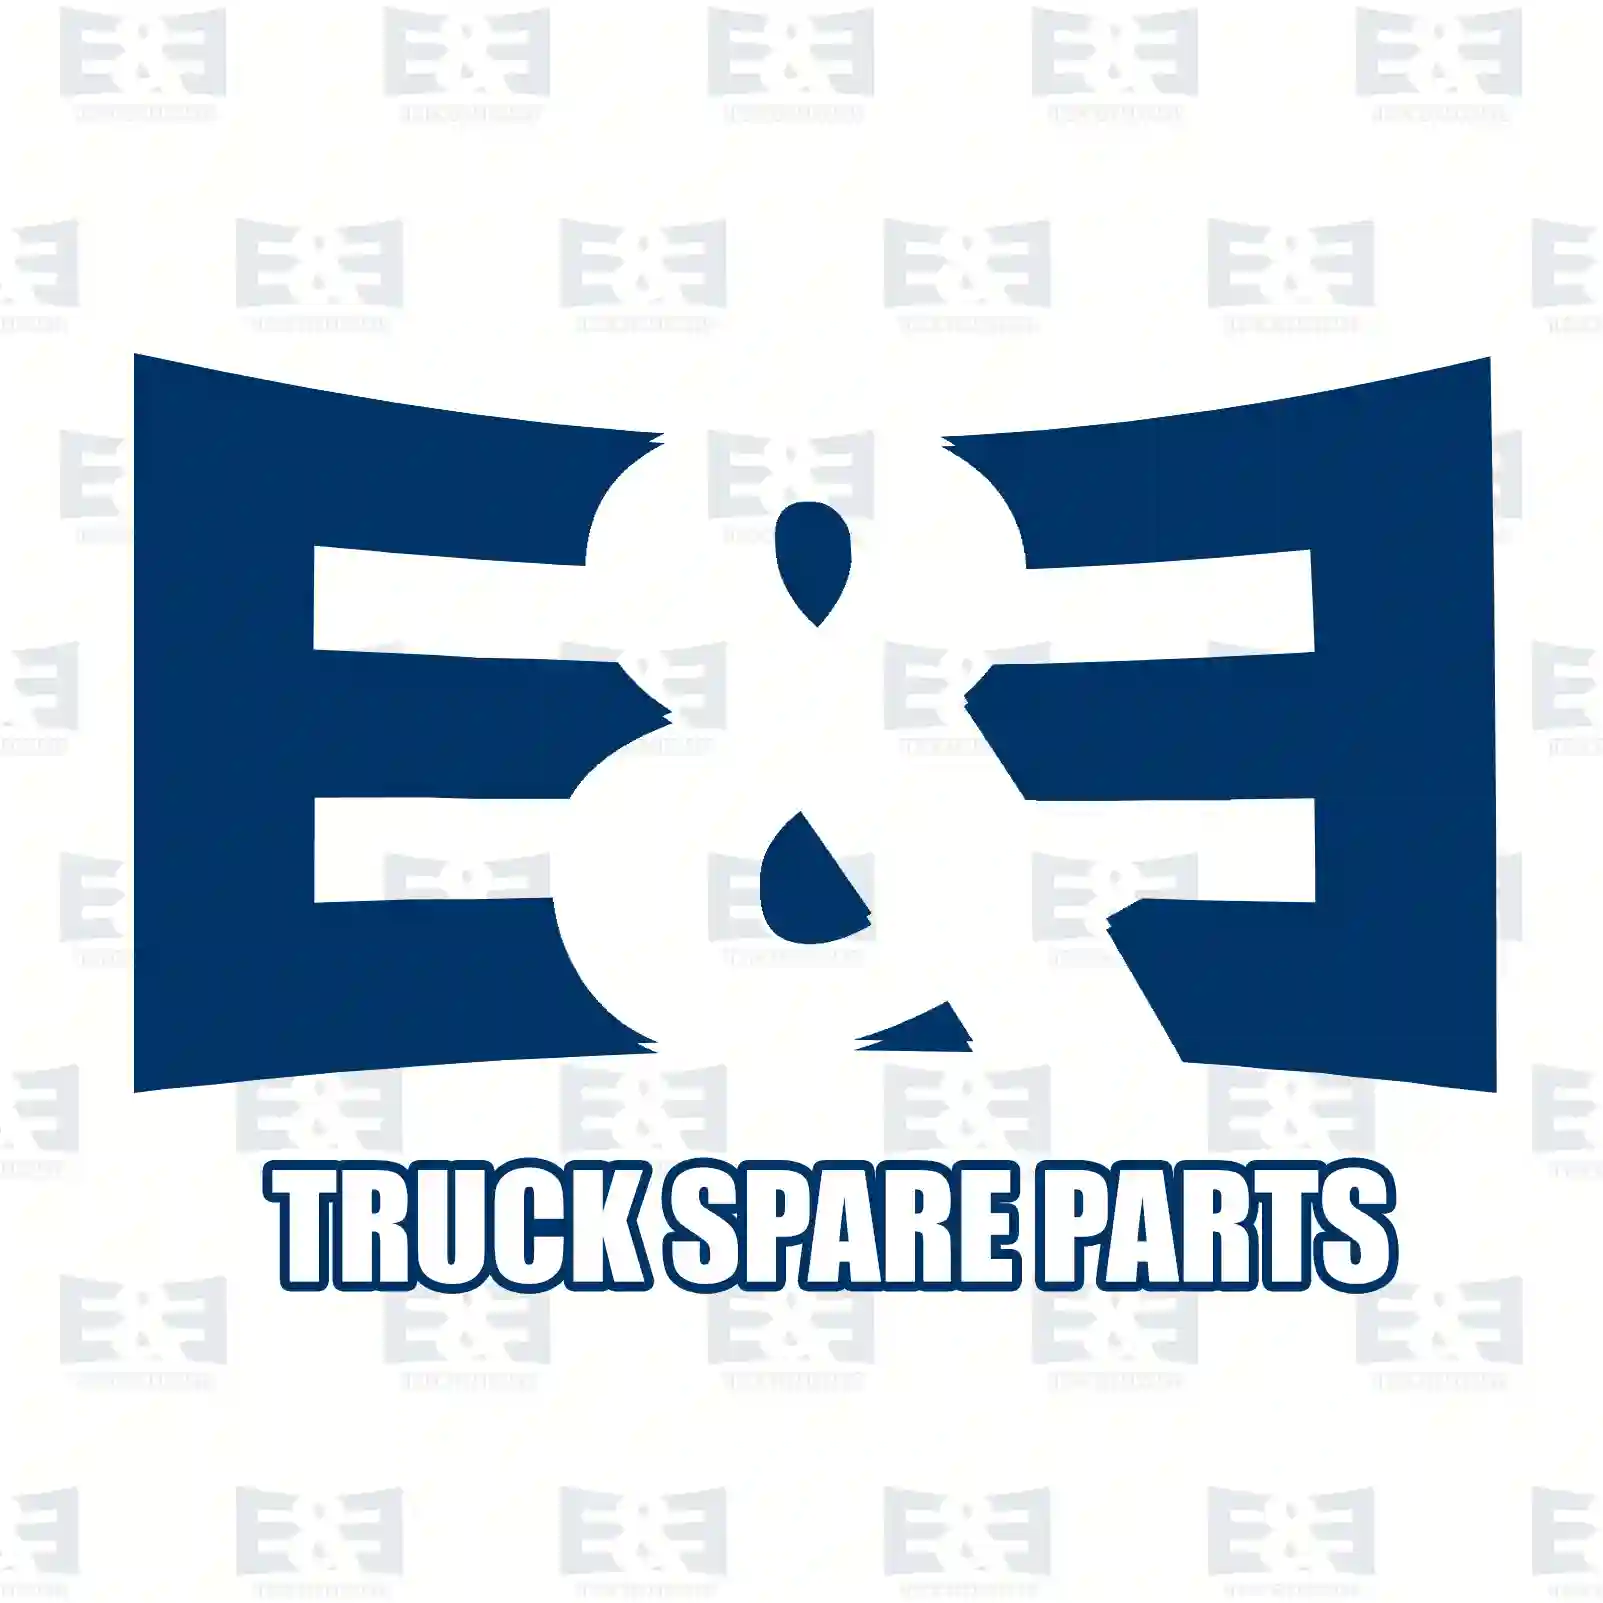 Switch, rear fog lamp, 2E2298496, 04854425, 4854425, 500349217, 500388603 ||  2E2298496 E&E Truck Spare Parts | Truck Spare Parts, Auotomotive Spare Parts Switch, rear fog lamp, 2E2298496, 04854425, 4854425, 500349217, 500388603 ||  2E2298496 E&E Truck Spare Parts | Truck Spare Parts, Auotomotive Spare Parts